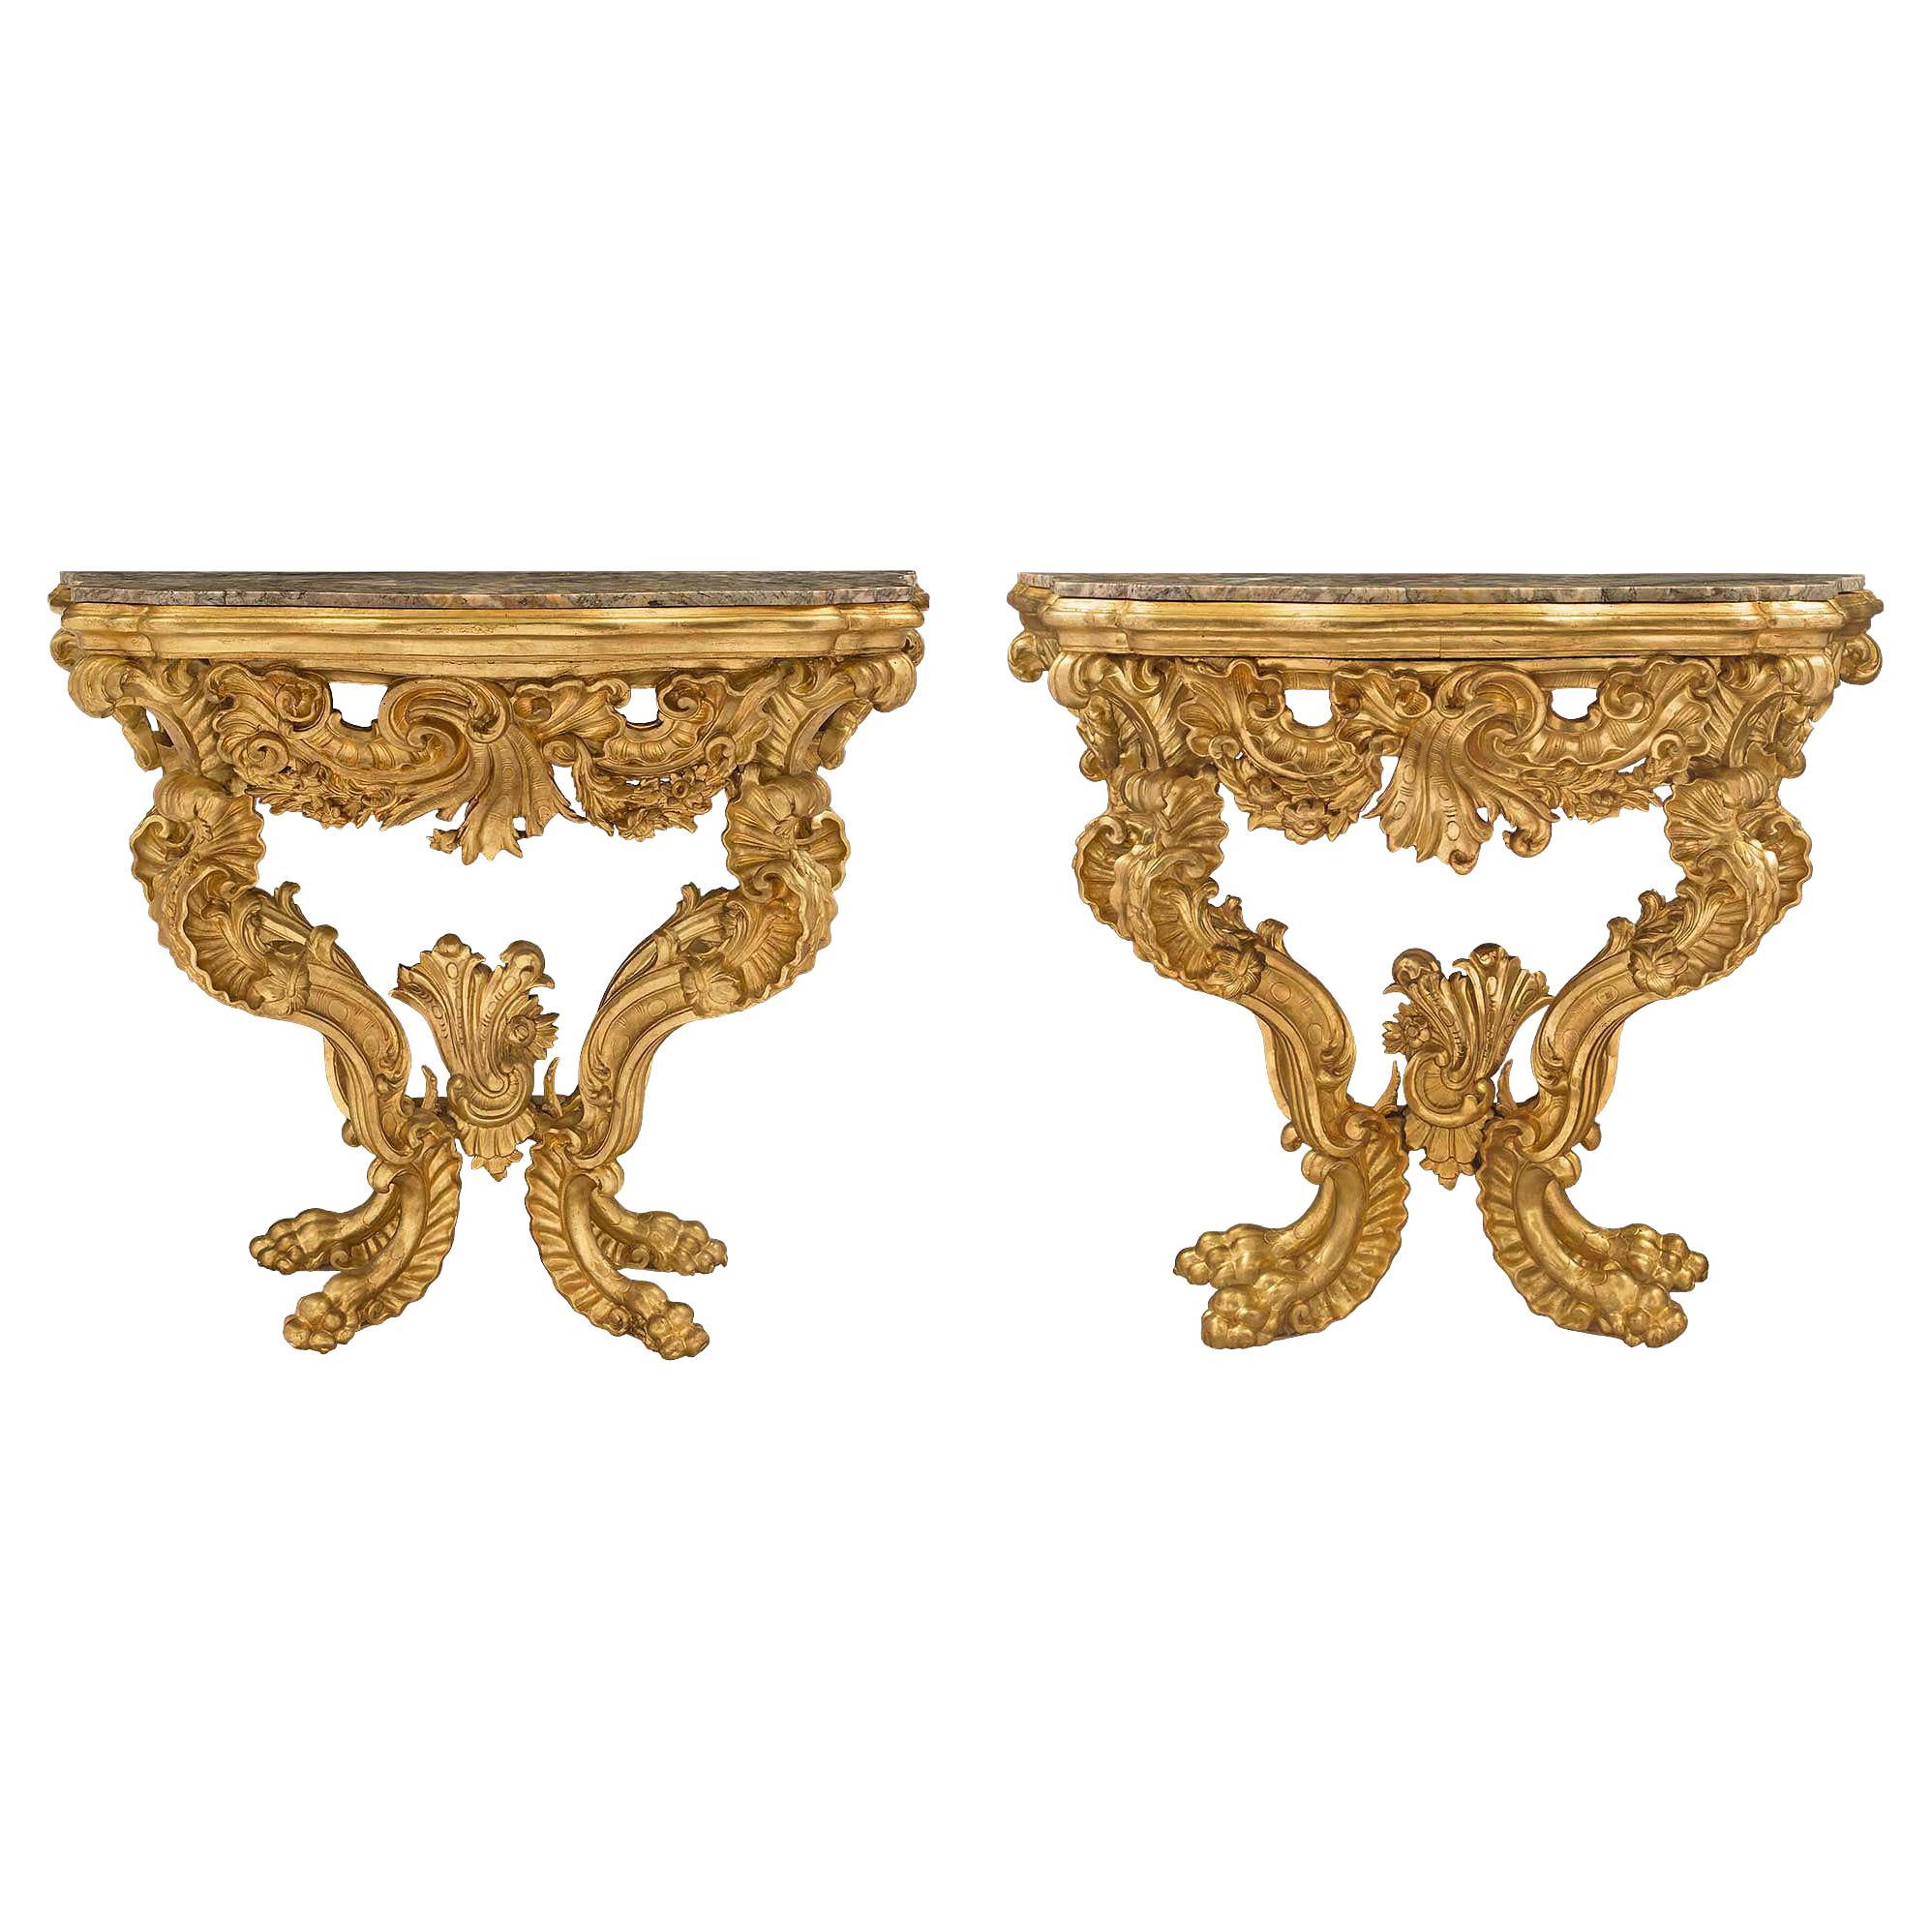 Paire de consoles à quatre pieds en bois doré et marbre de style baroque italien du 18ème siècle